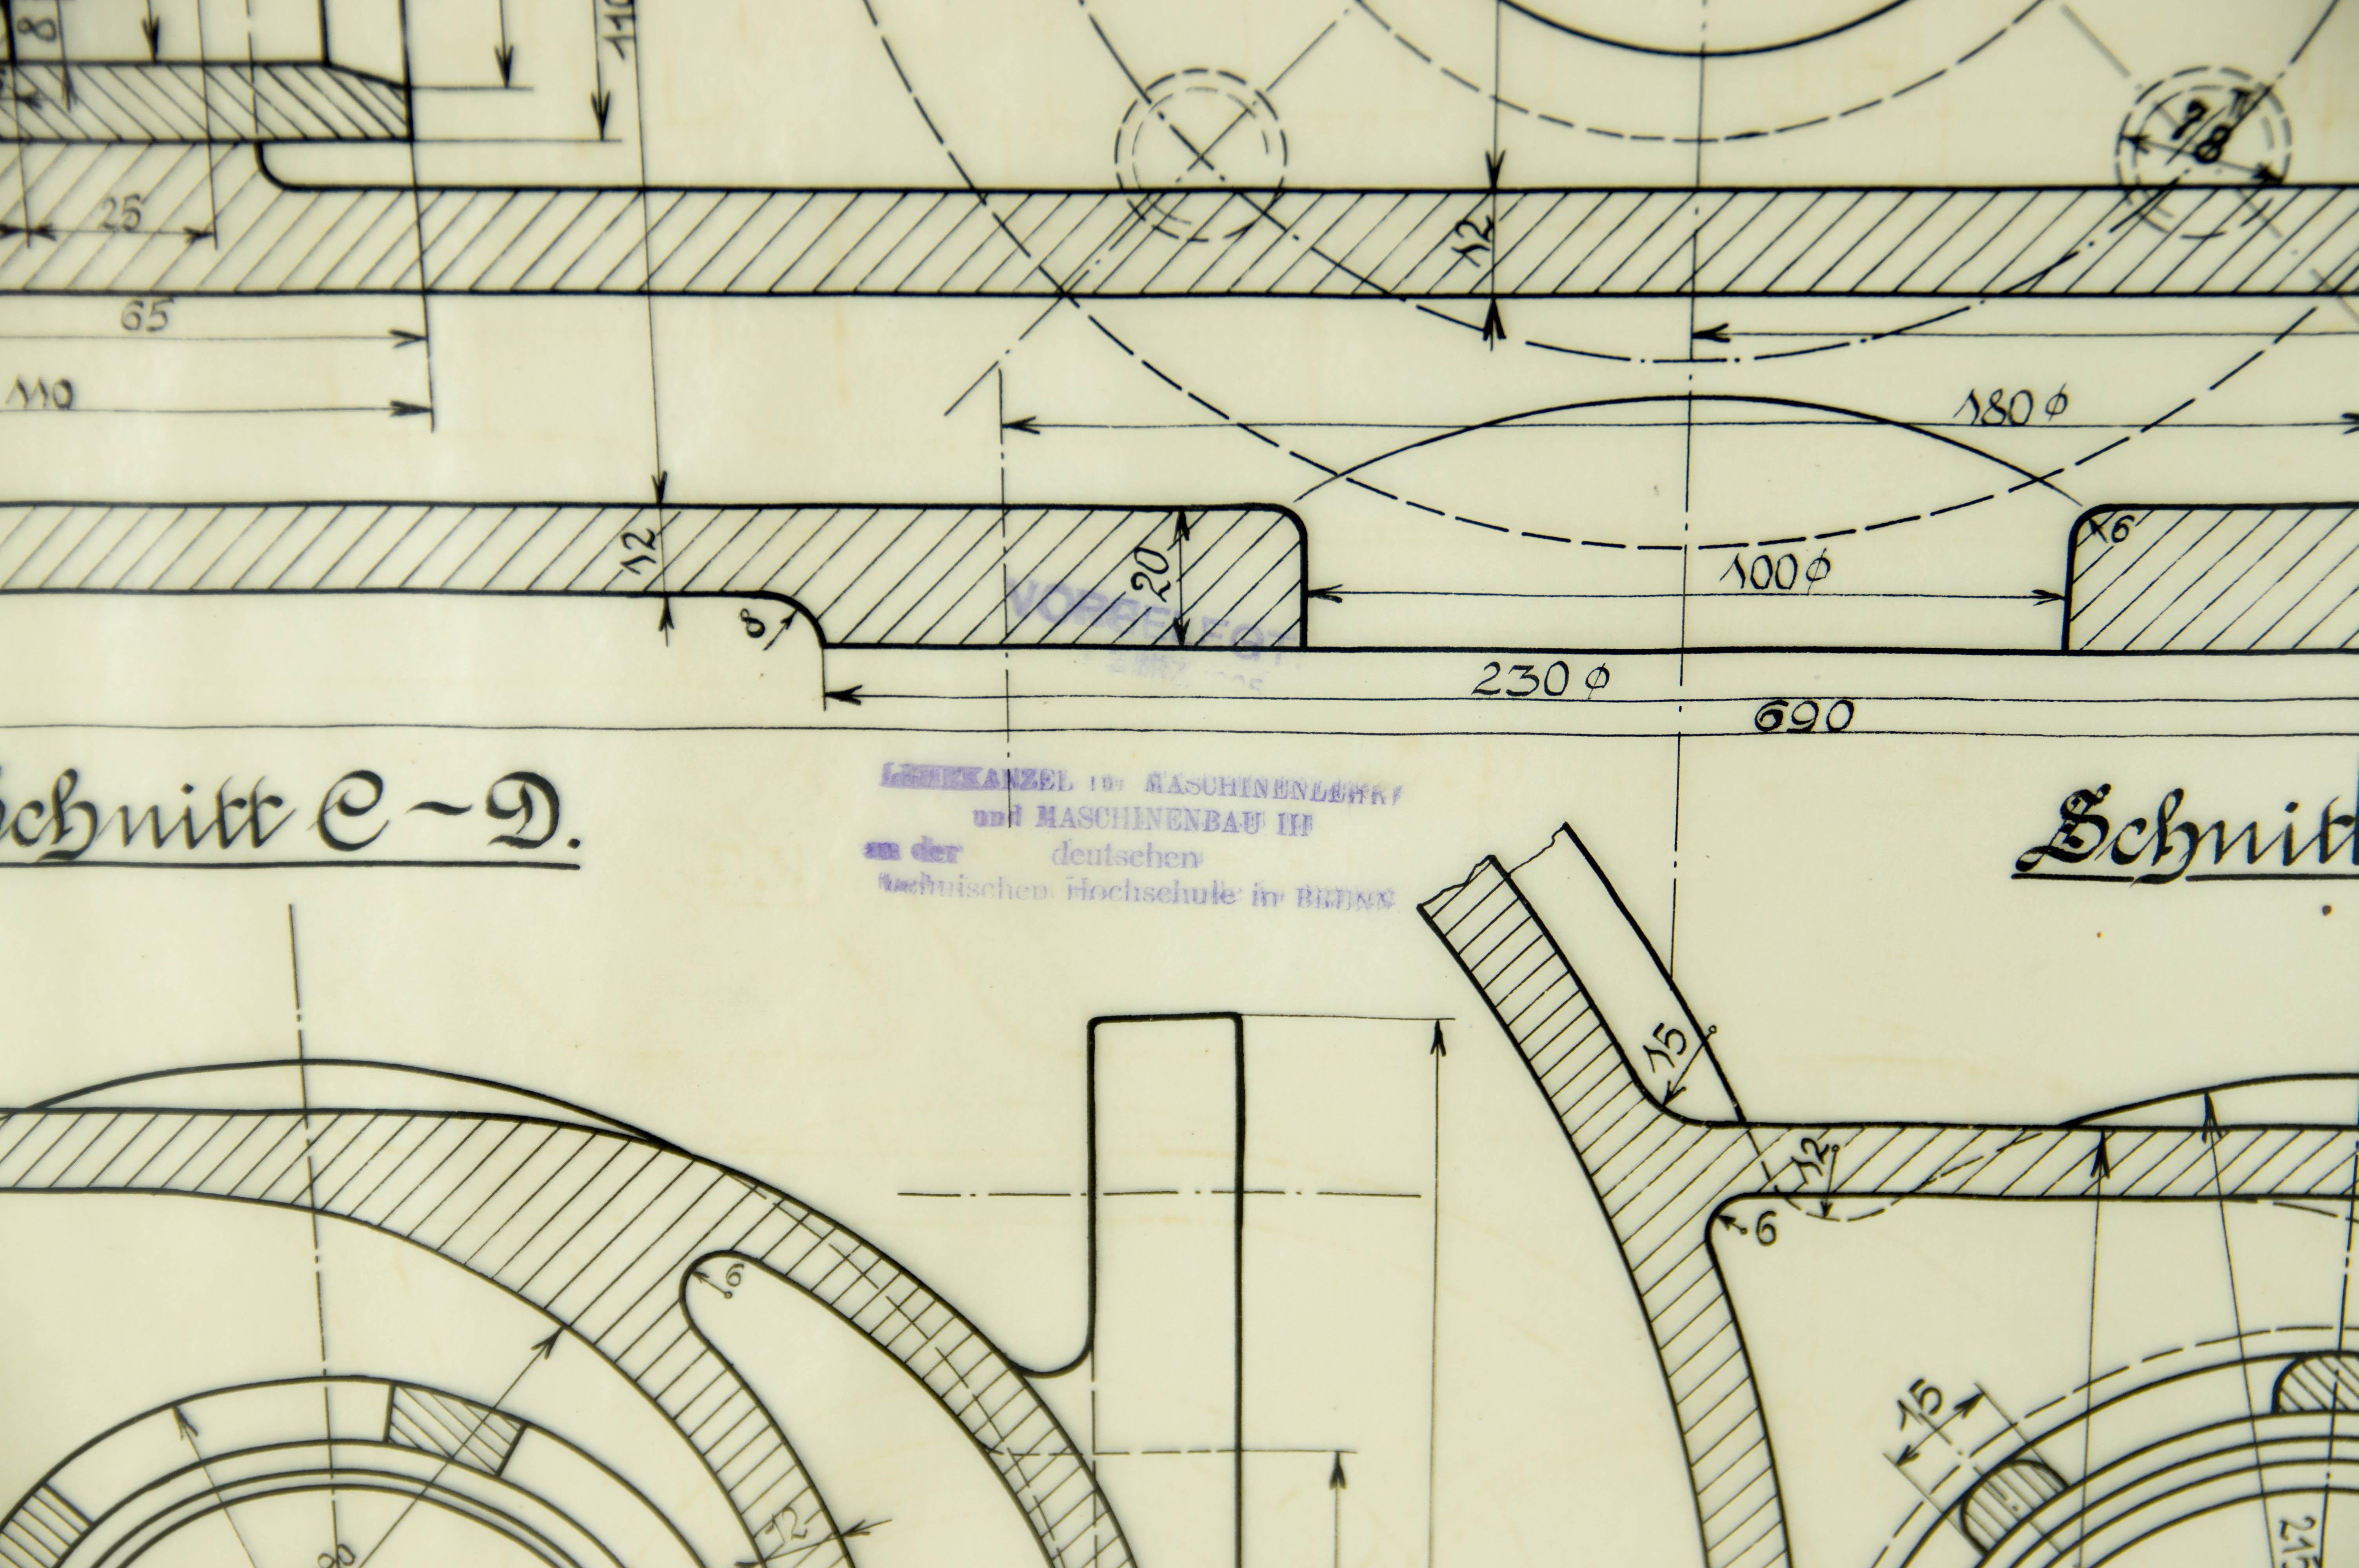 old engineering drawings